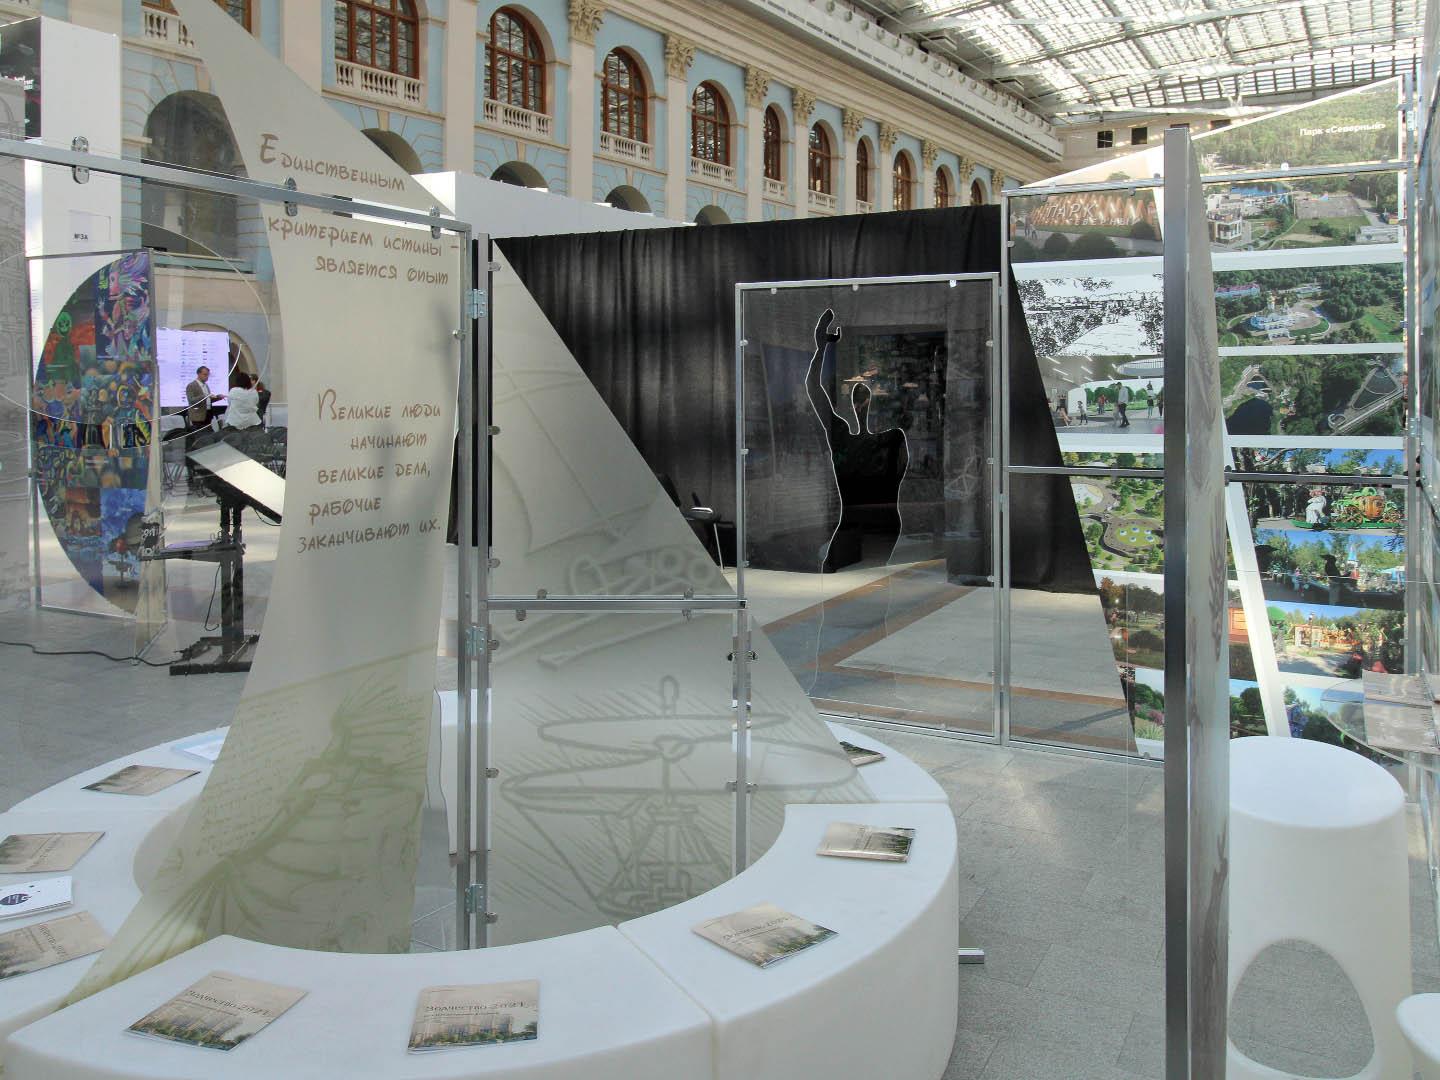 XXIX Международный архитектурный фестиваль «Зодчество»